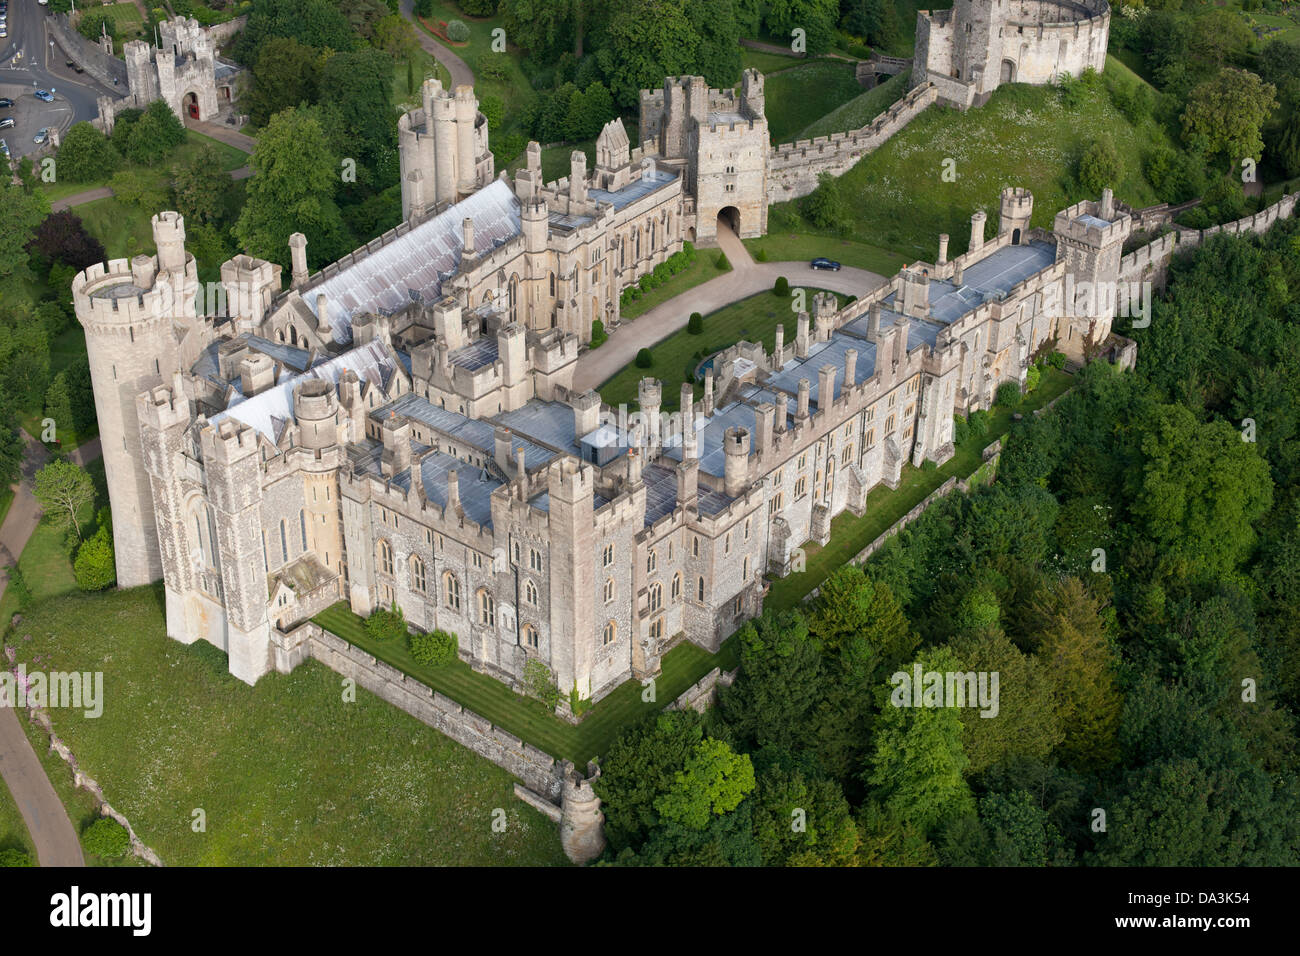 LUFTAUFNAHME. Mittelalterliche Burg von Arundel. West Sussex, England, Großbritannien, Vereinigtes Königreich. Stockfoto